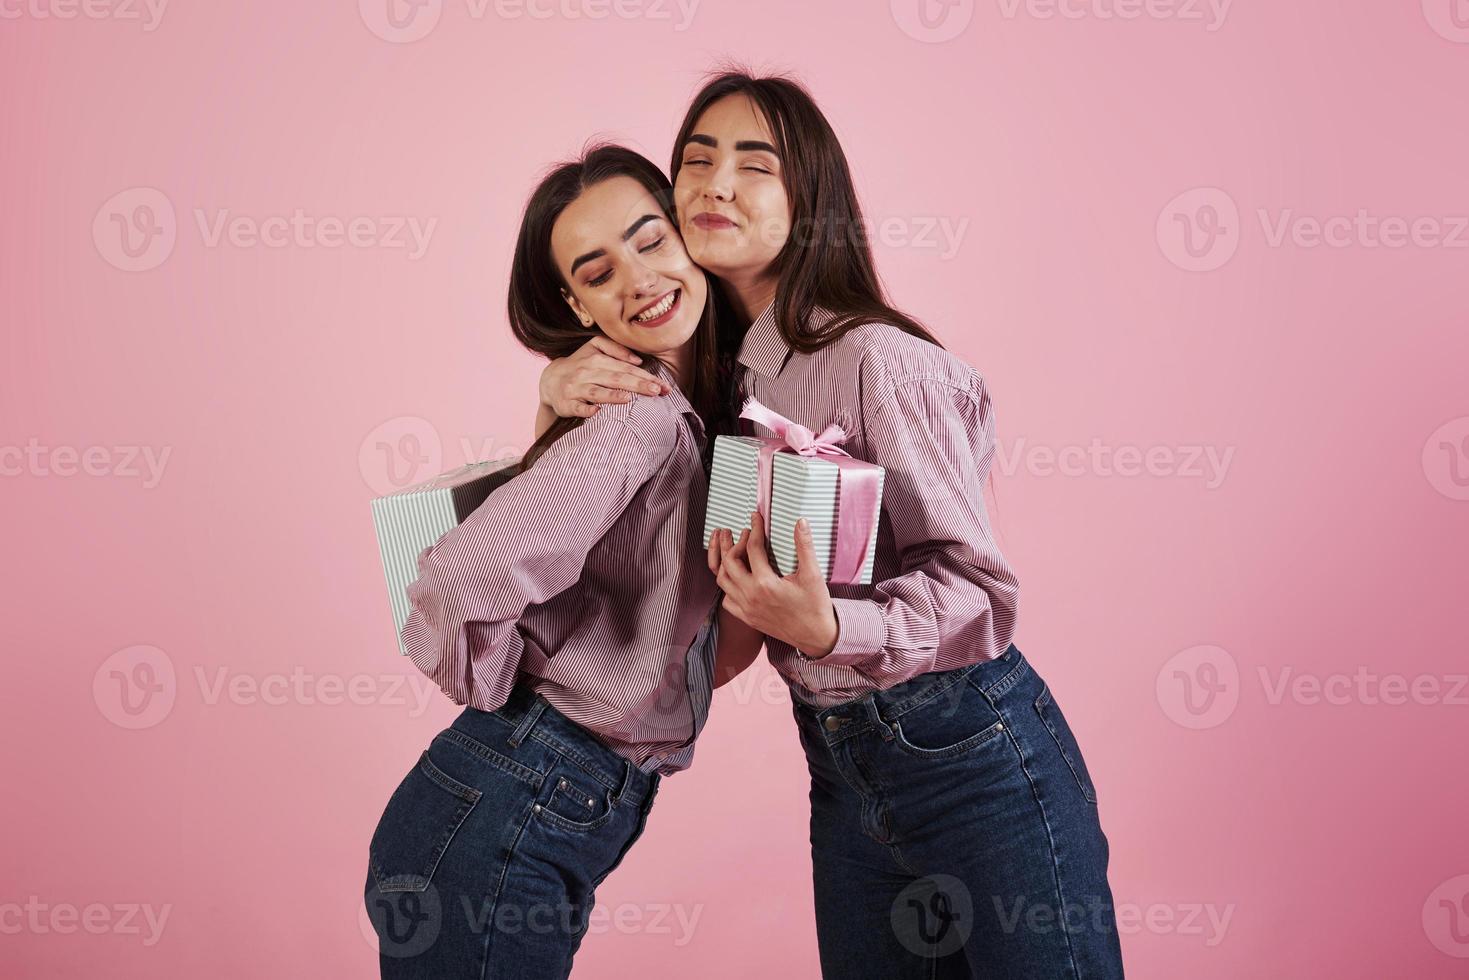 celebrando juntos. mujeres jóvenes divirtiéndose en el estudio con fondo rosa. gemelos adorables foto